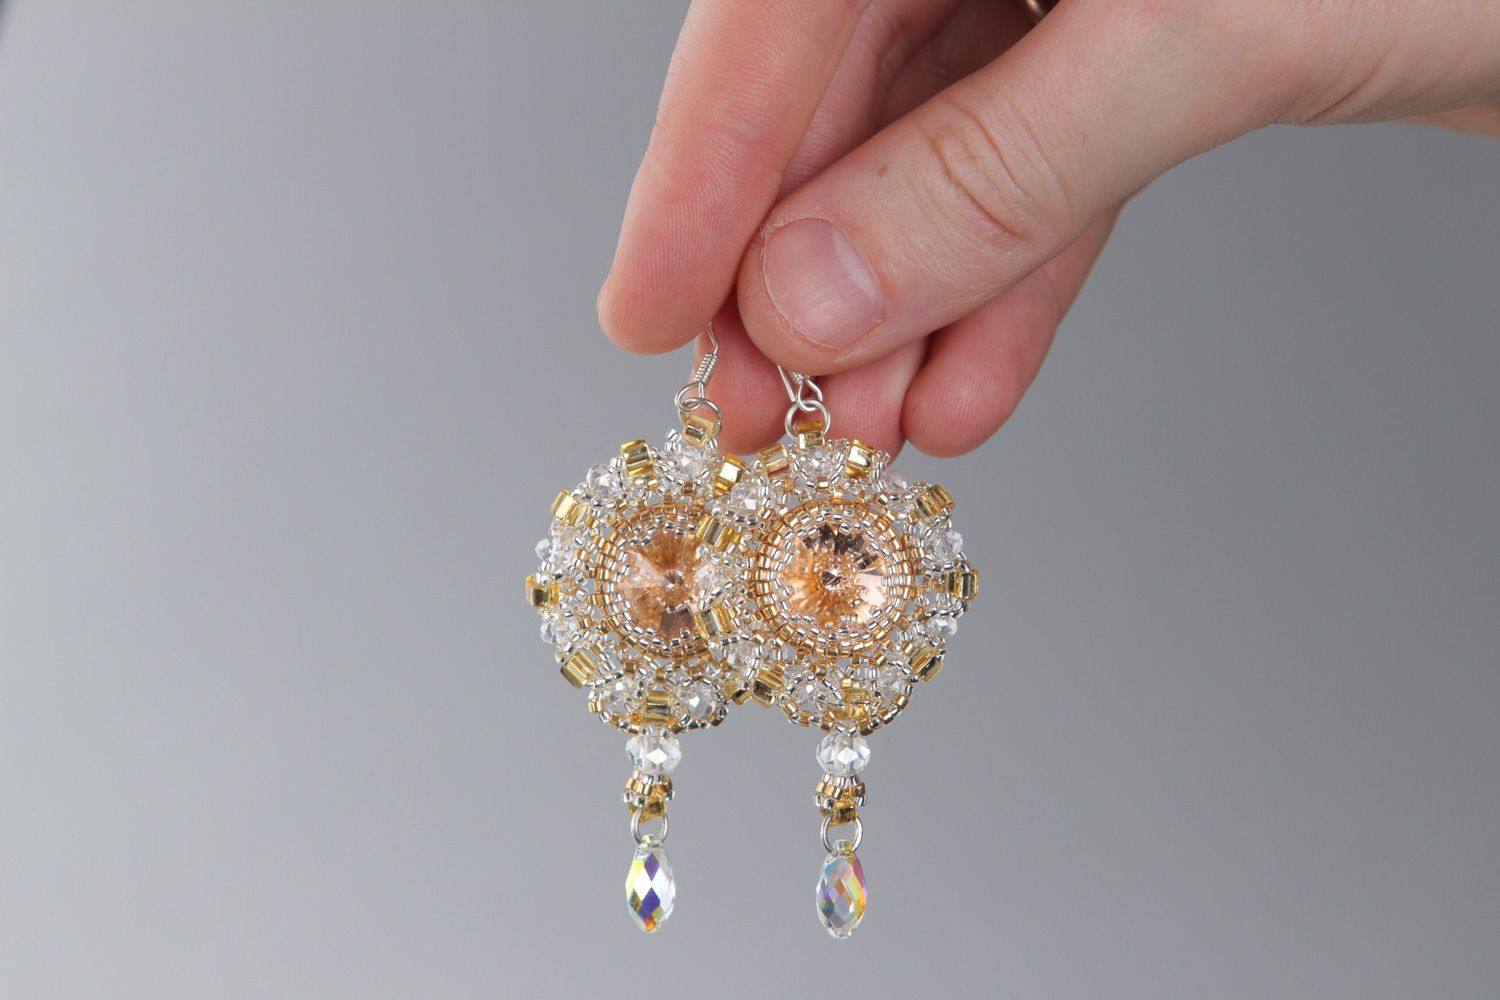 Handmade dangle beaded earrings in tender golden and white color palette photo 3